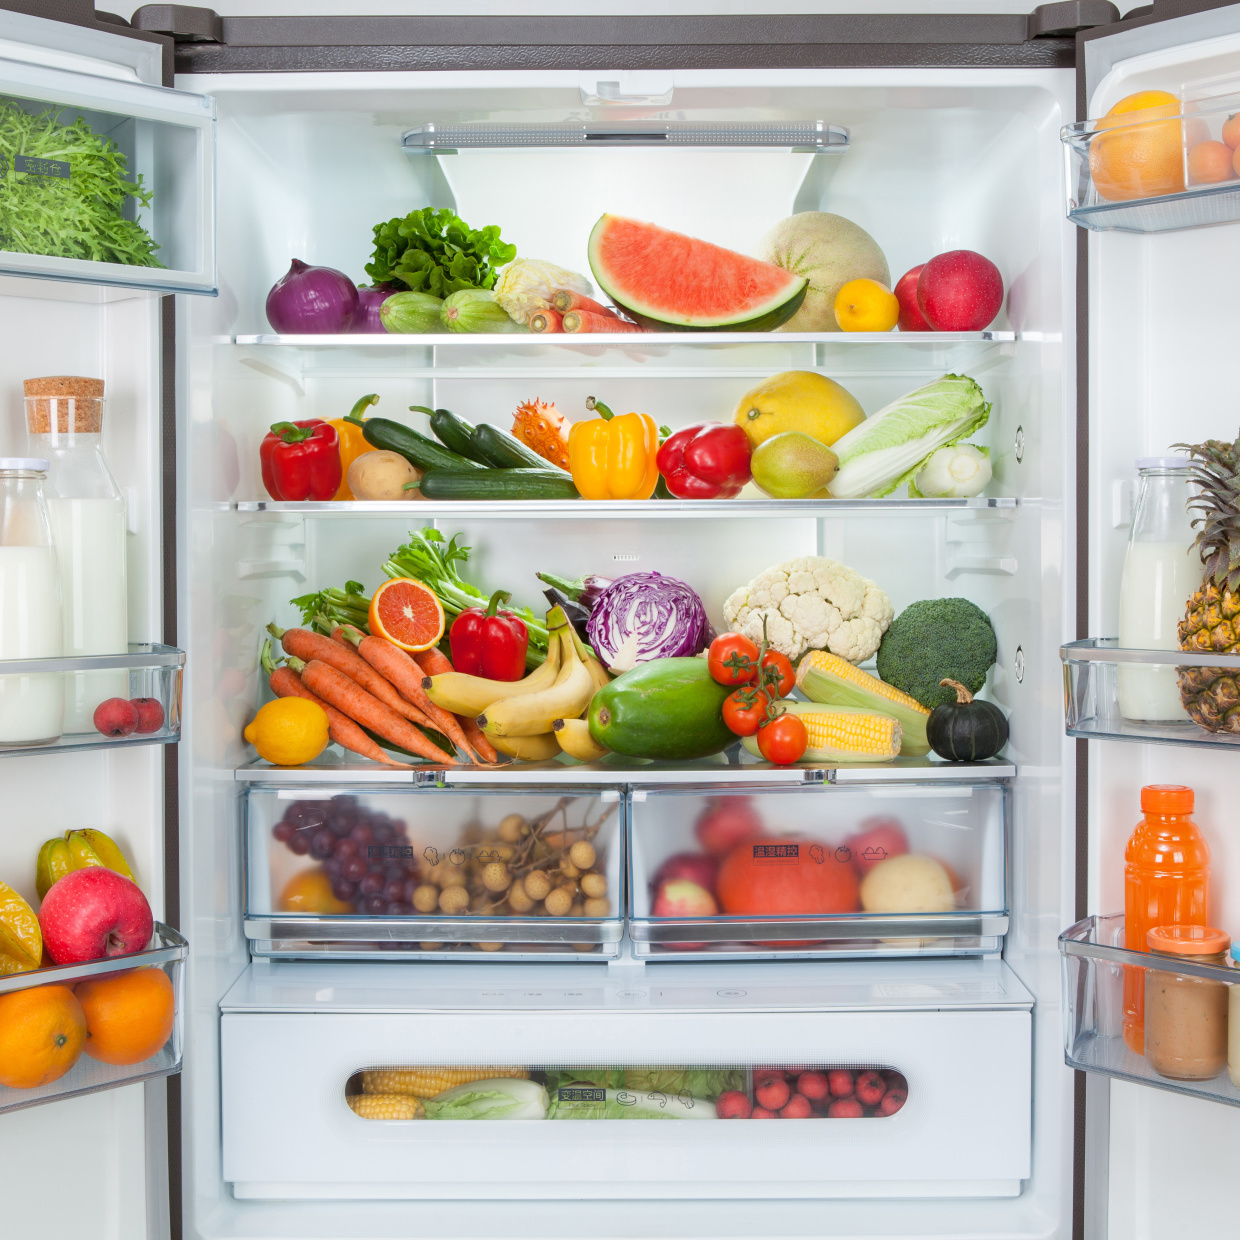  冷凍庫は食材をいっぱい入れた方がいい!?「冷蔵庫の節電テクニック」4つのポイント 